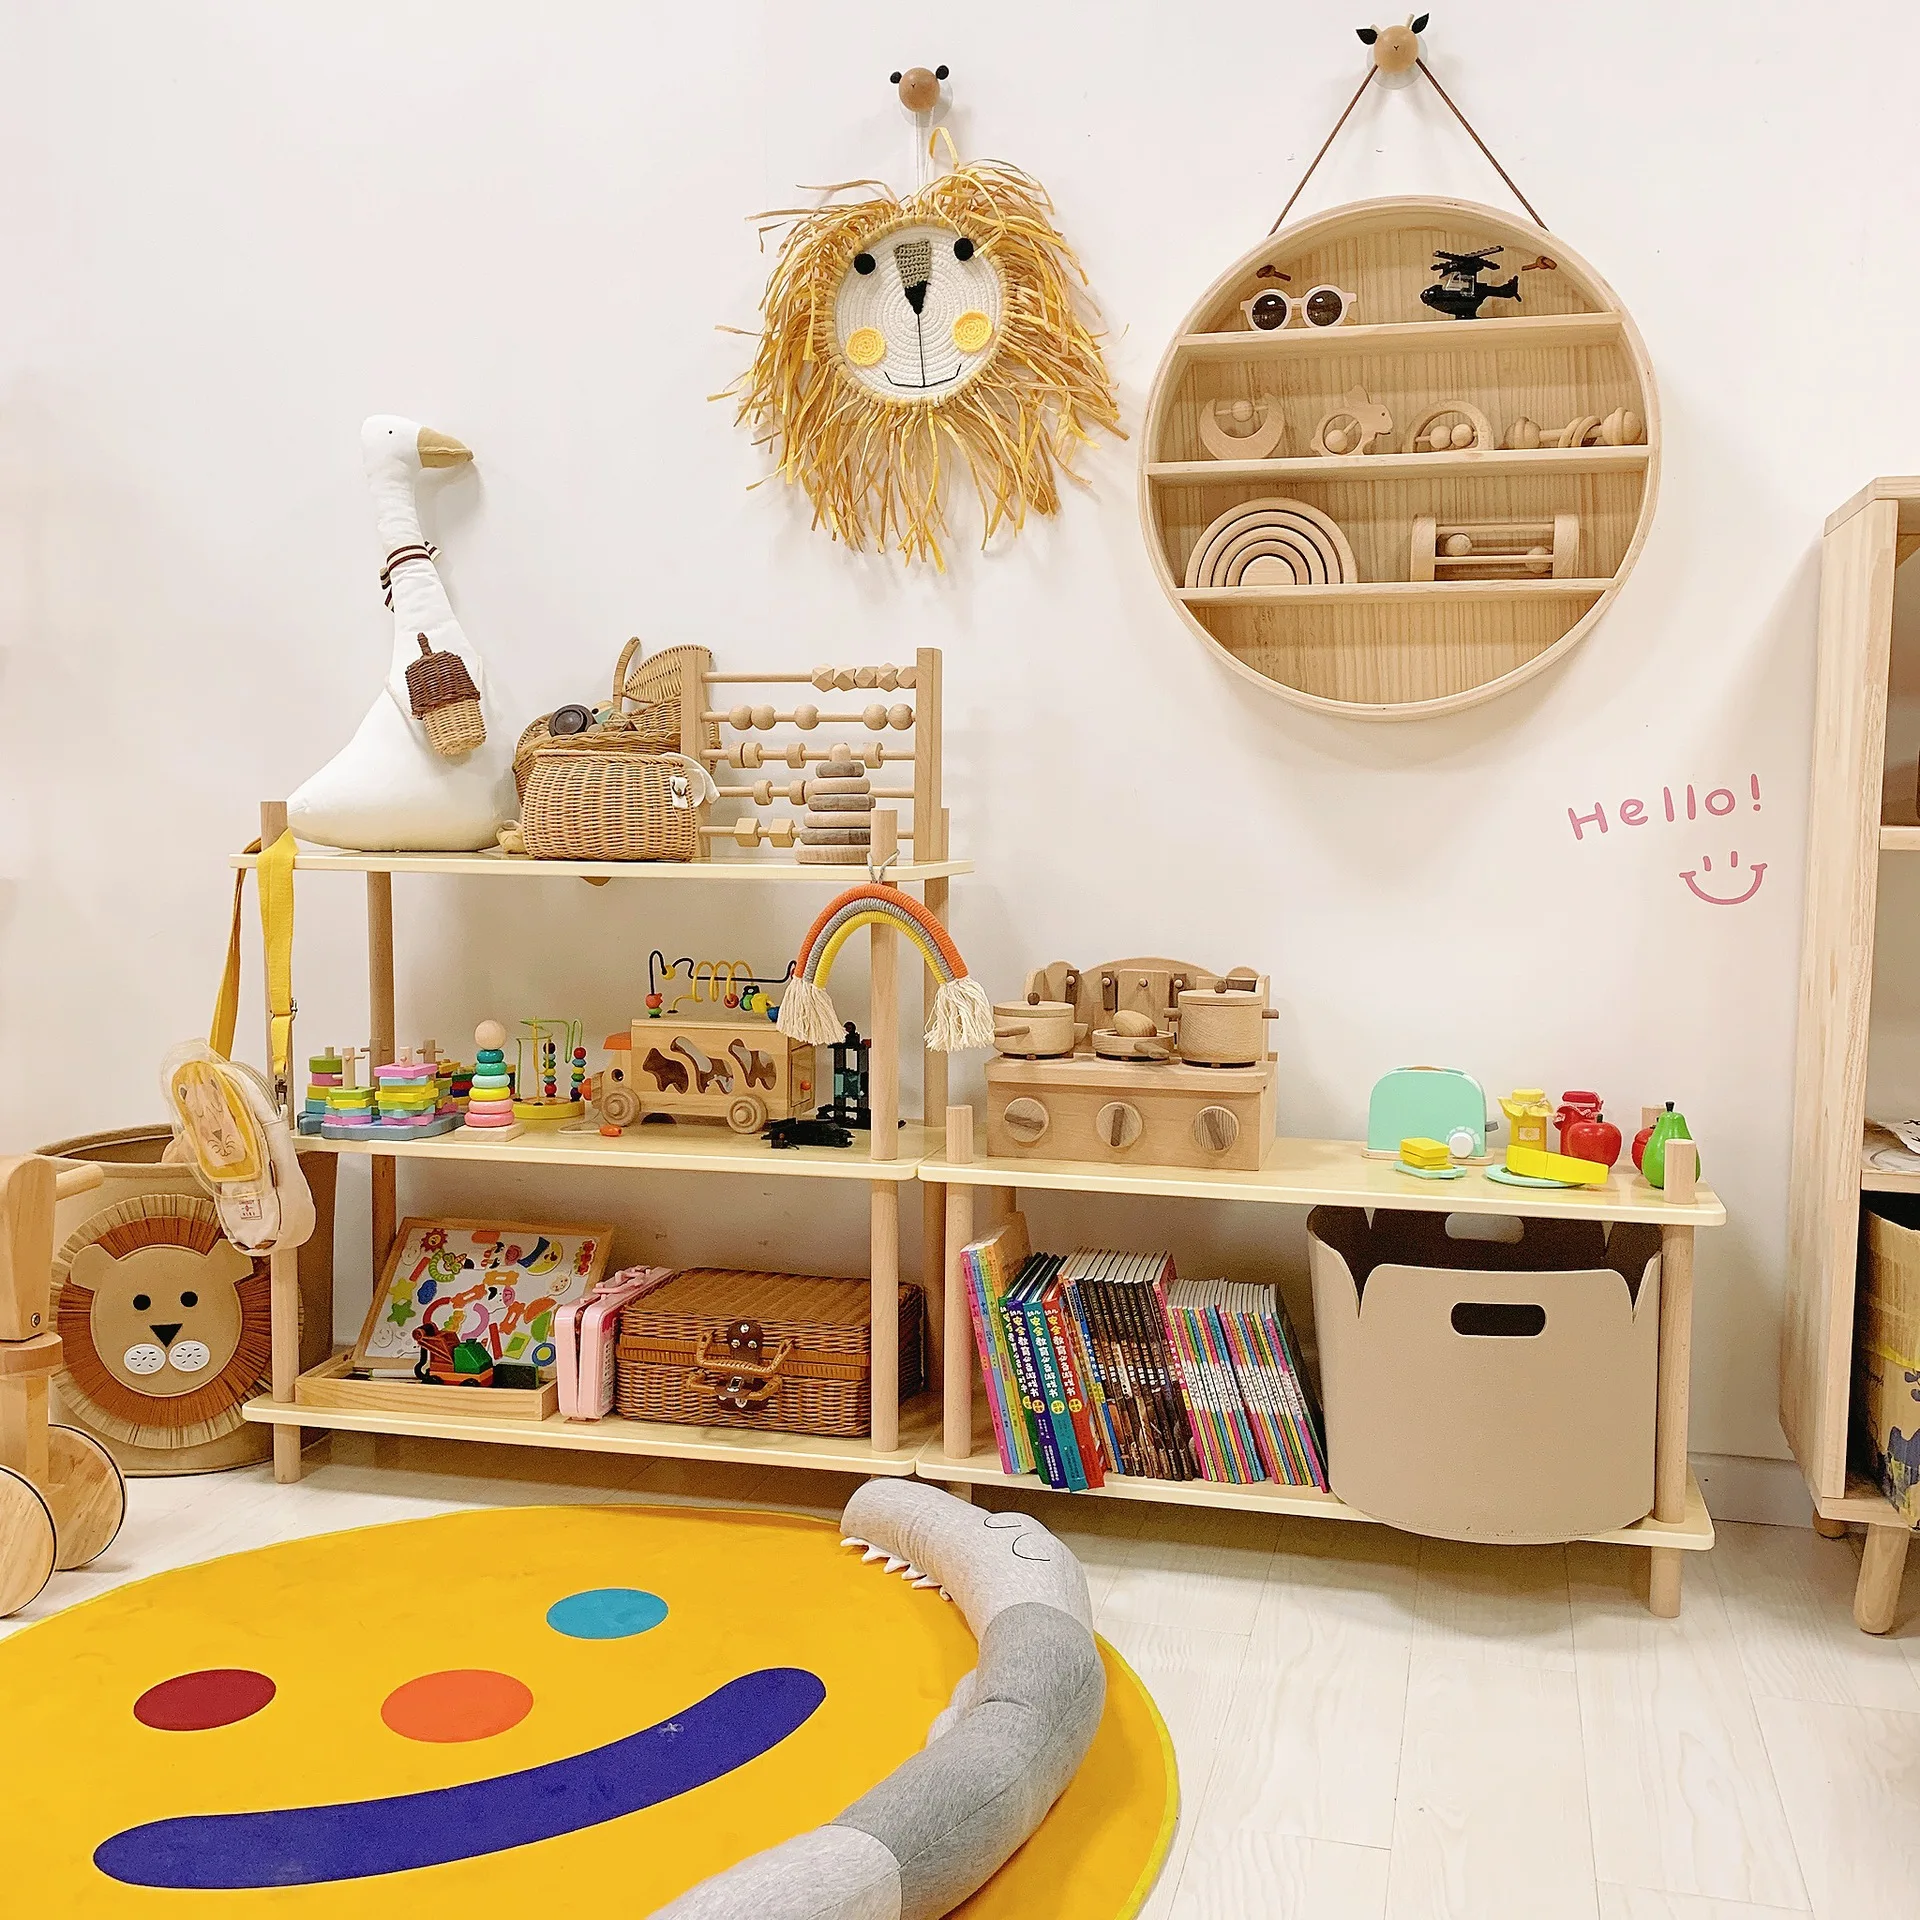 Étagère en bois pour enfants, bibliothèque Montessori / Waldorf